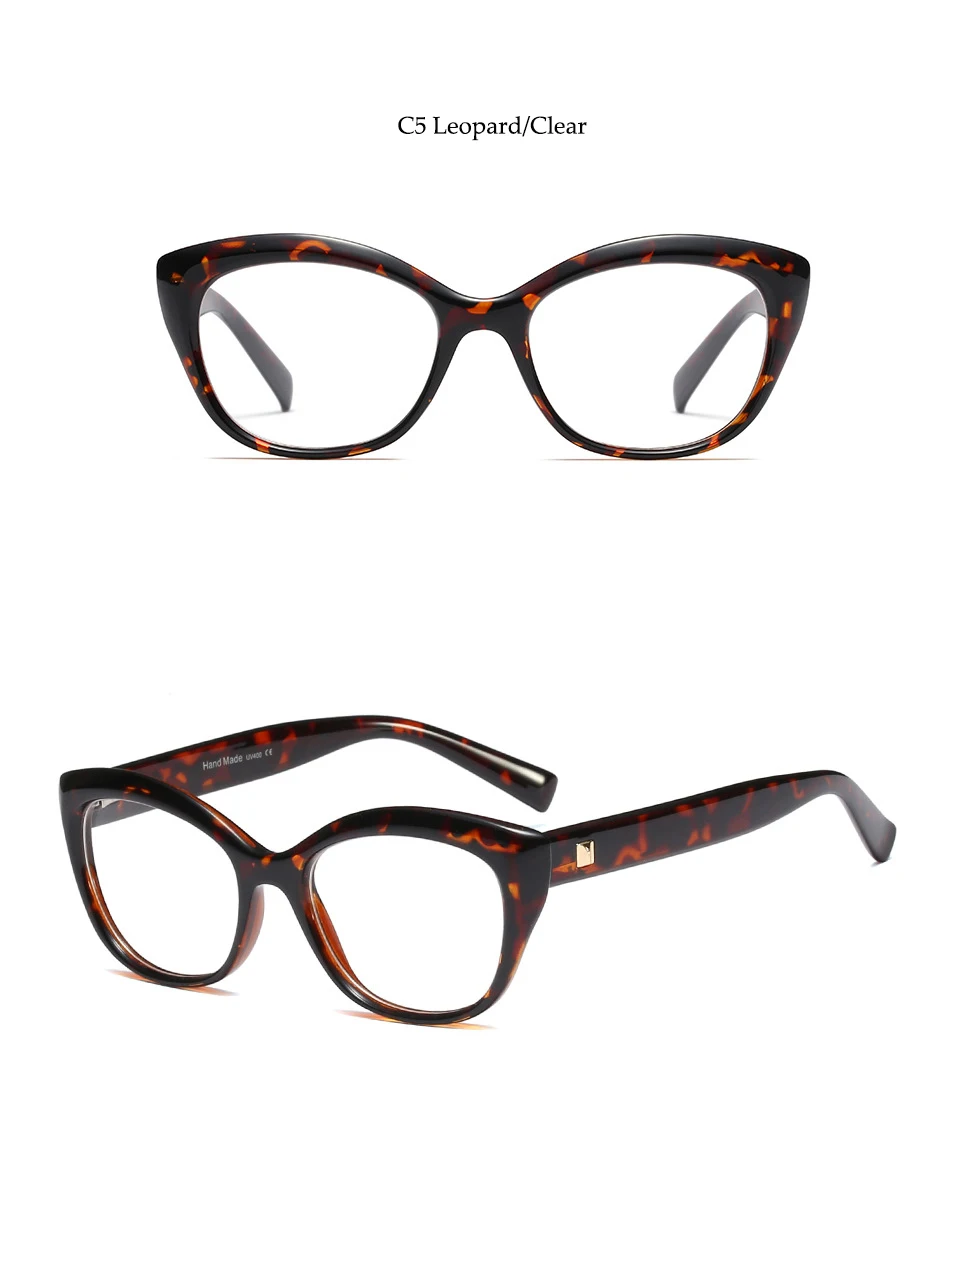 Сексуальные оптические очки, Женские винтажные солнцезащитные очки, фирменный дизайн, женские очки, оправа, очки, прозрачные, кошачьи глаза, стиль, красные оттенки